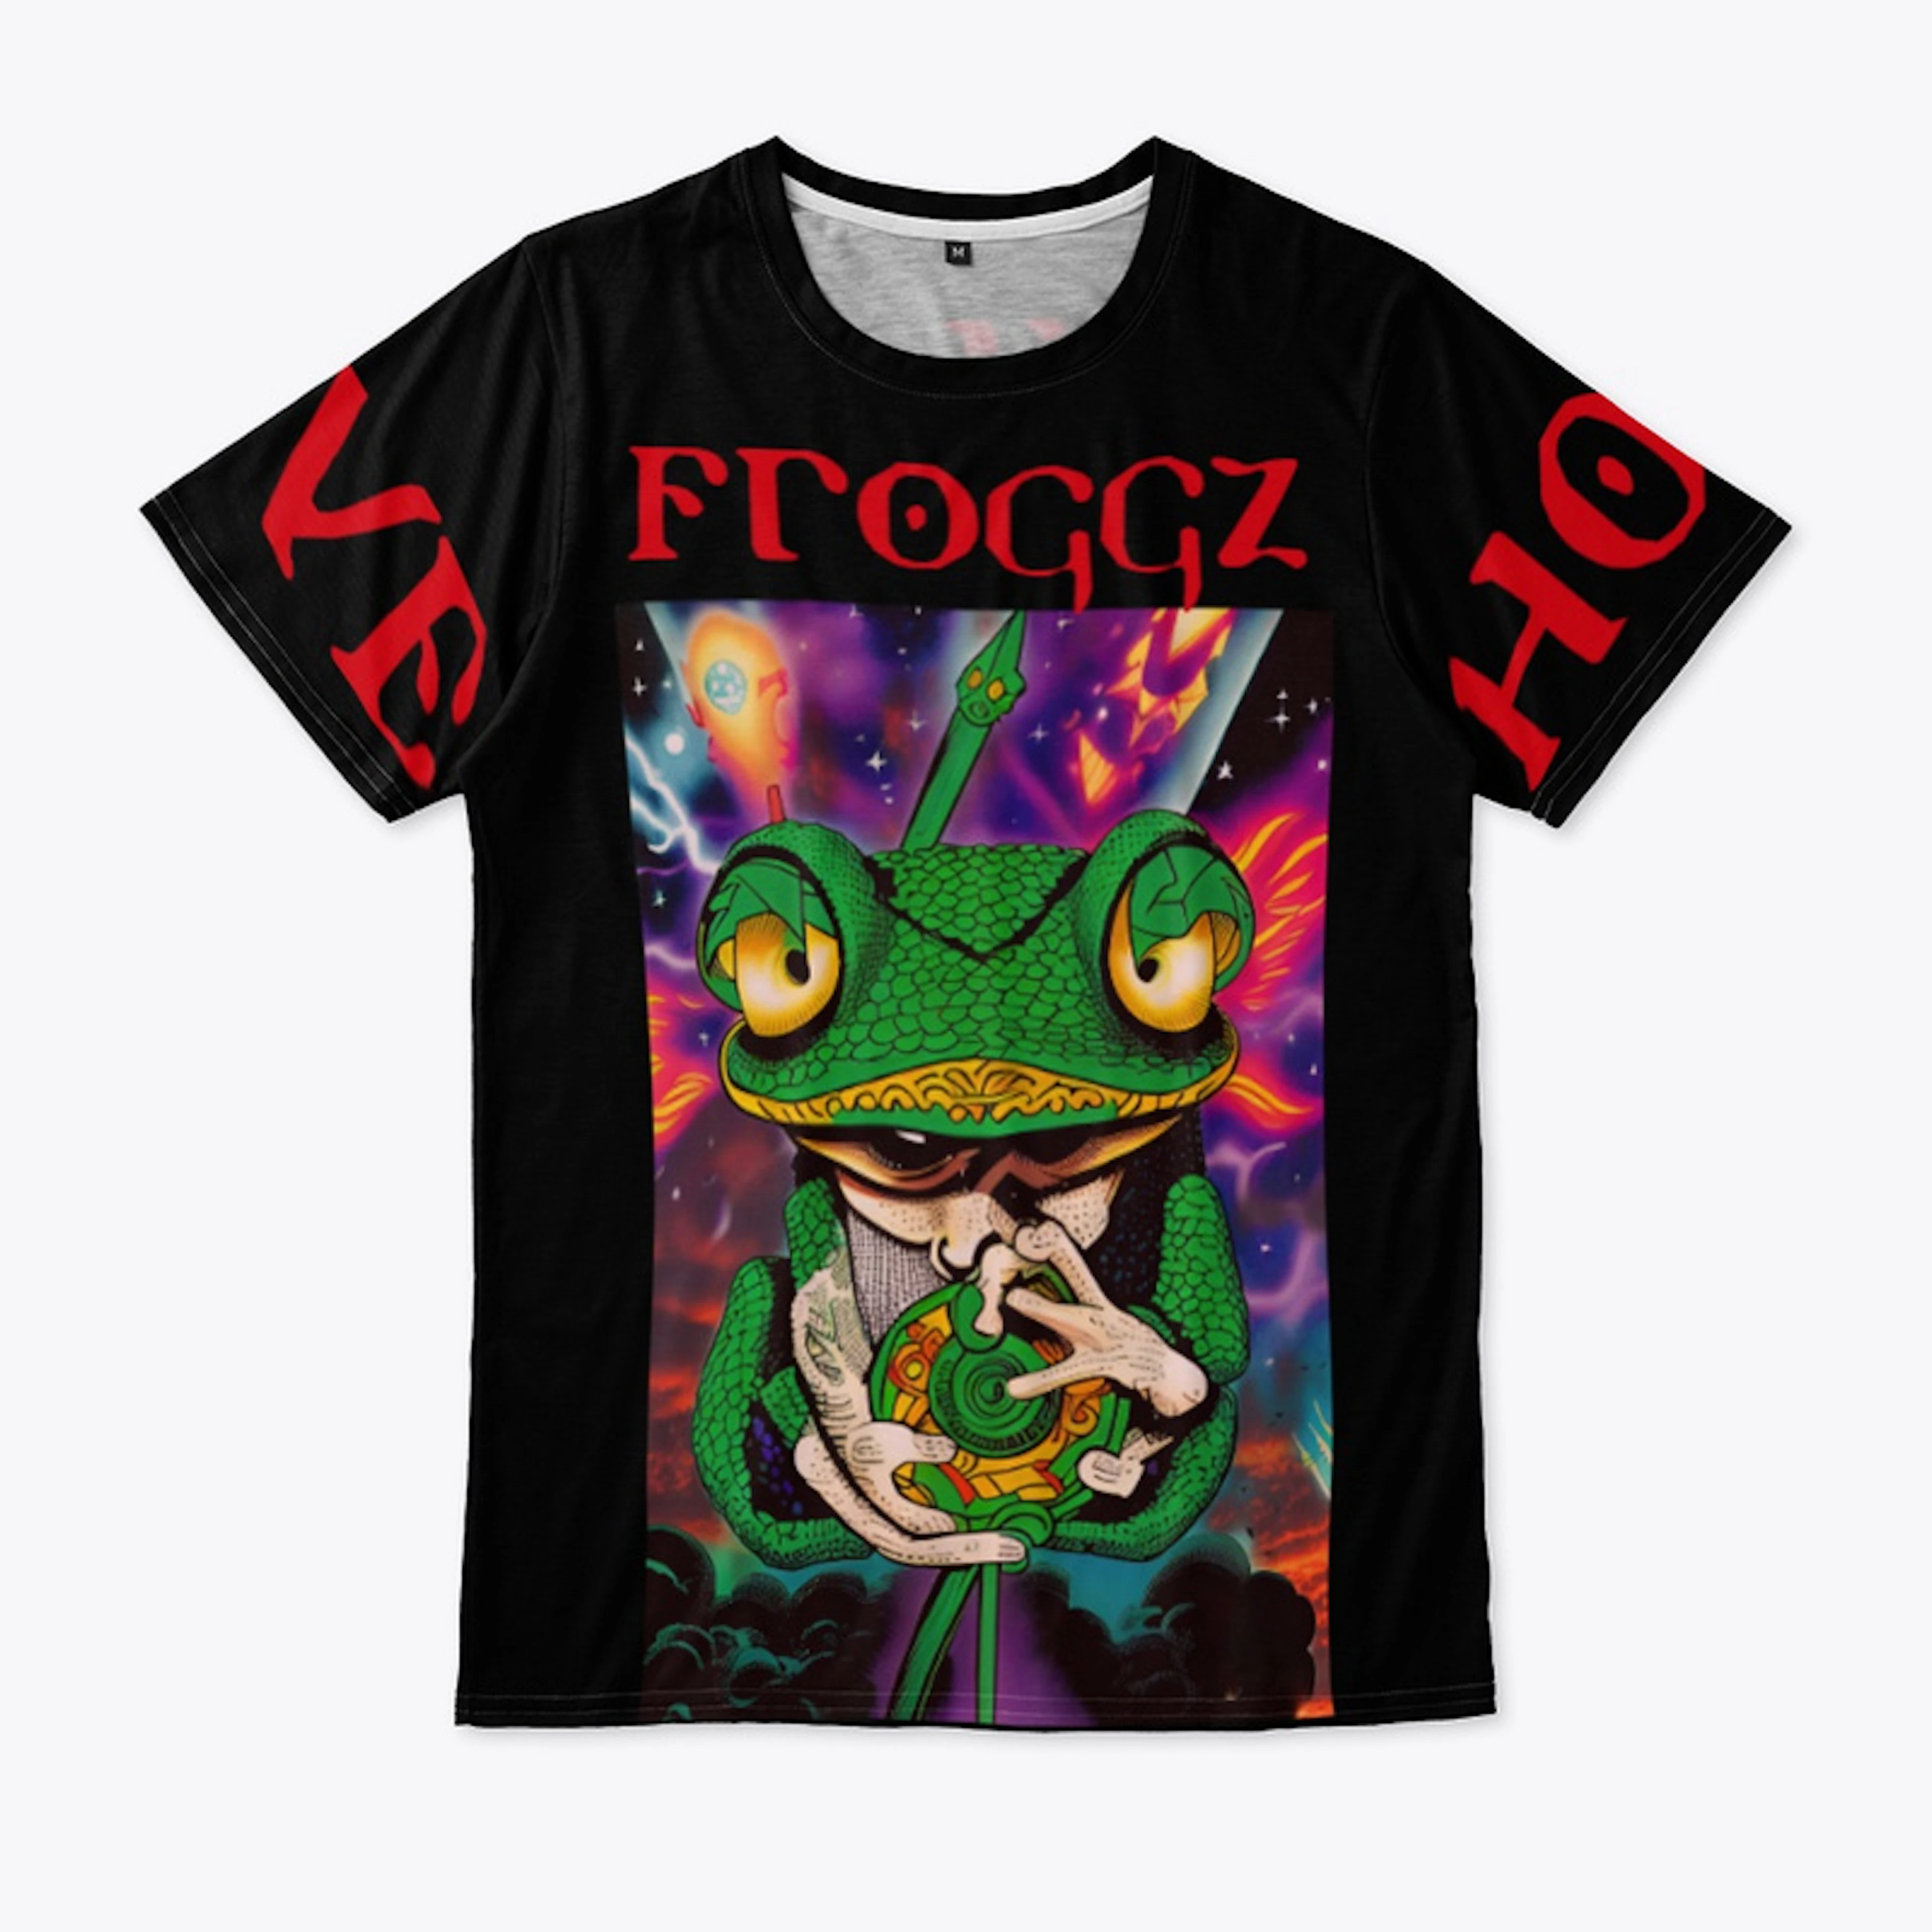 Updated Froggz Merch 